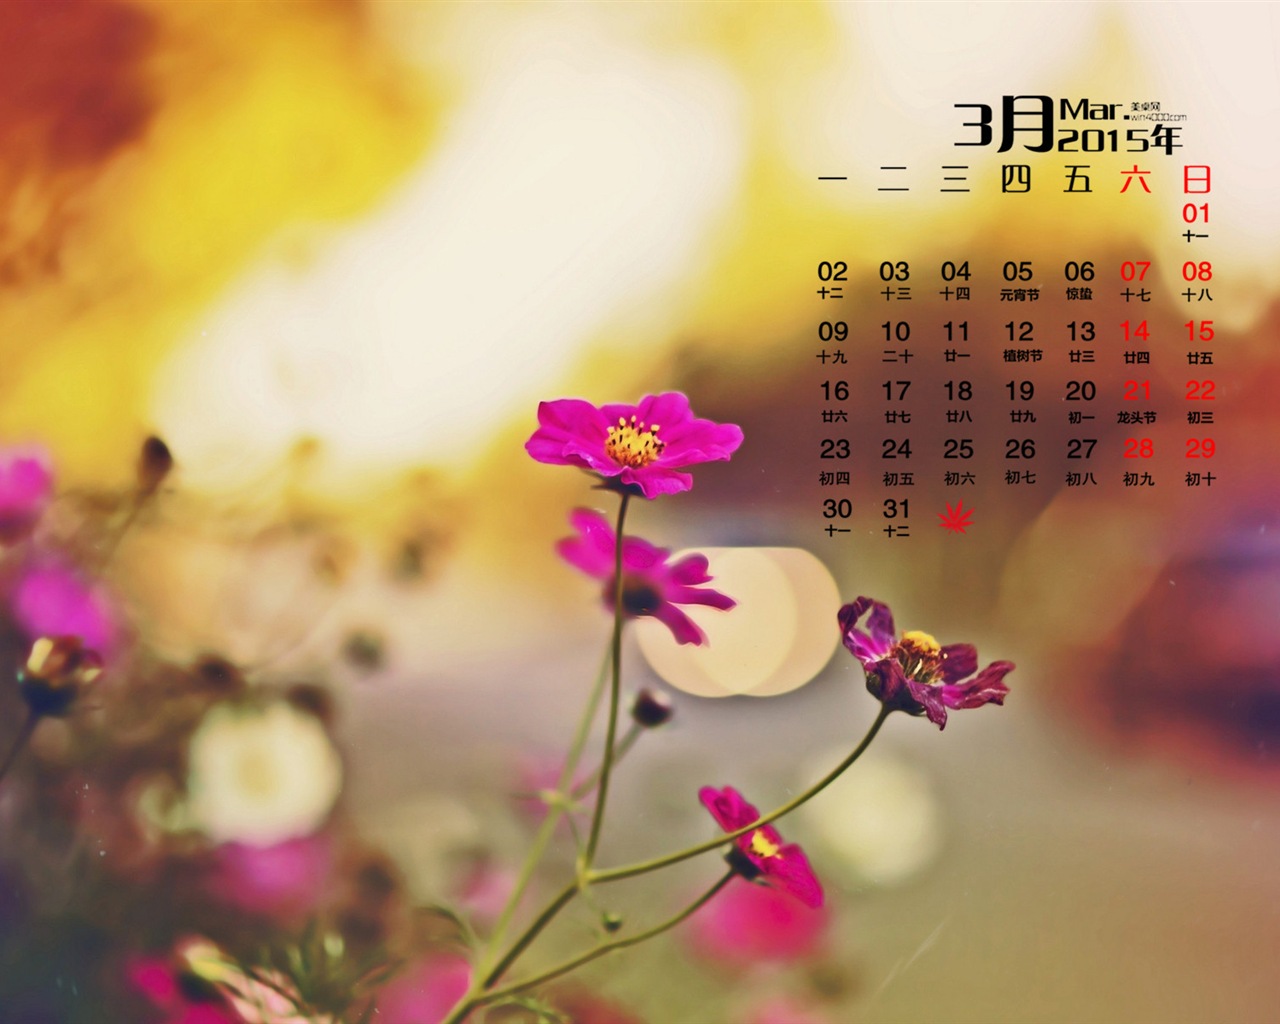 March 2015 Calendar wallpaper (1) #9 - 1280x1024